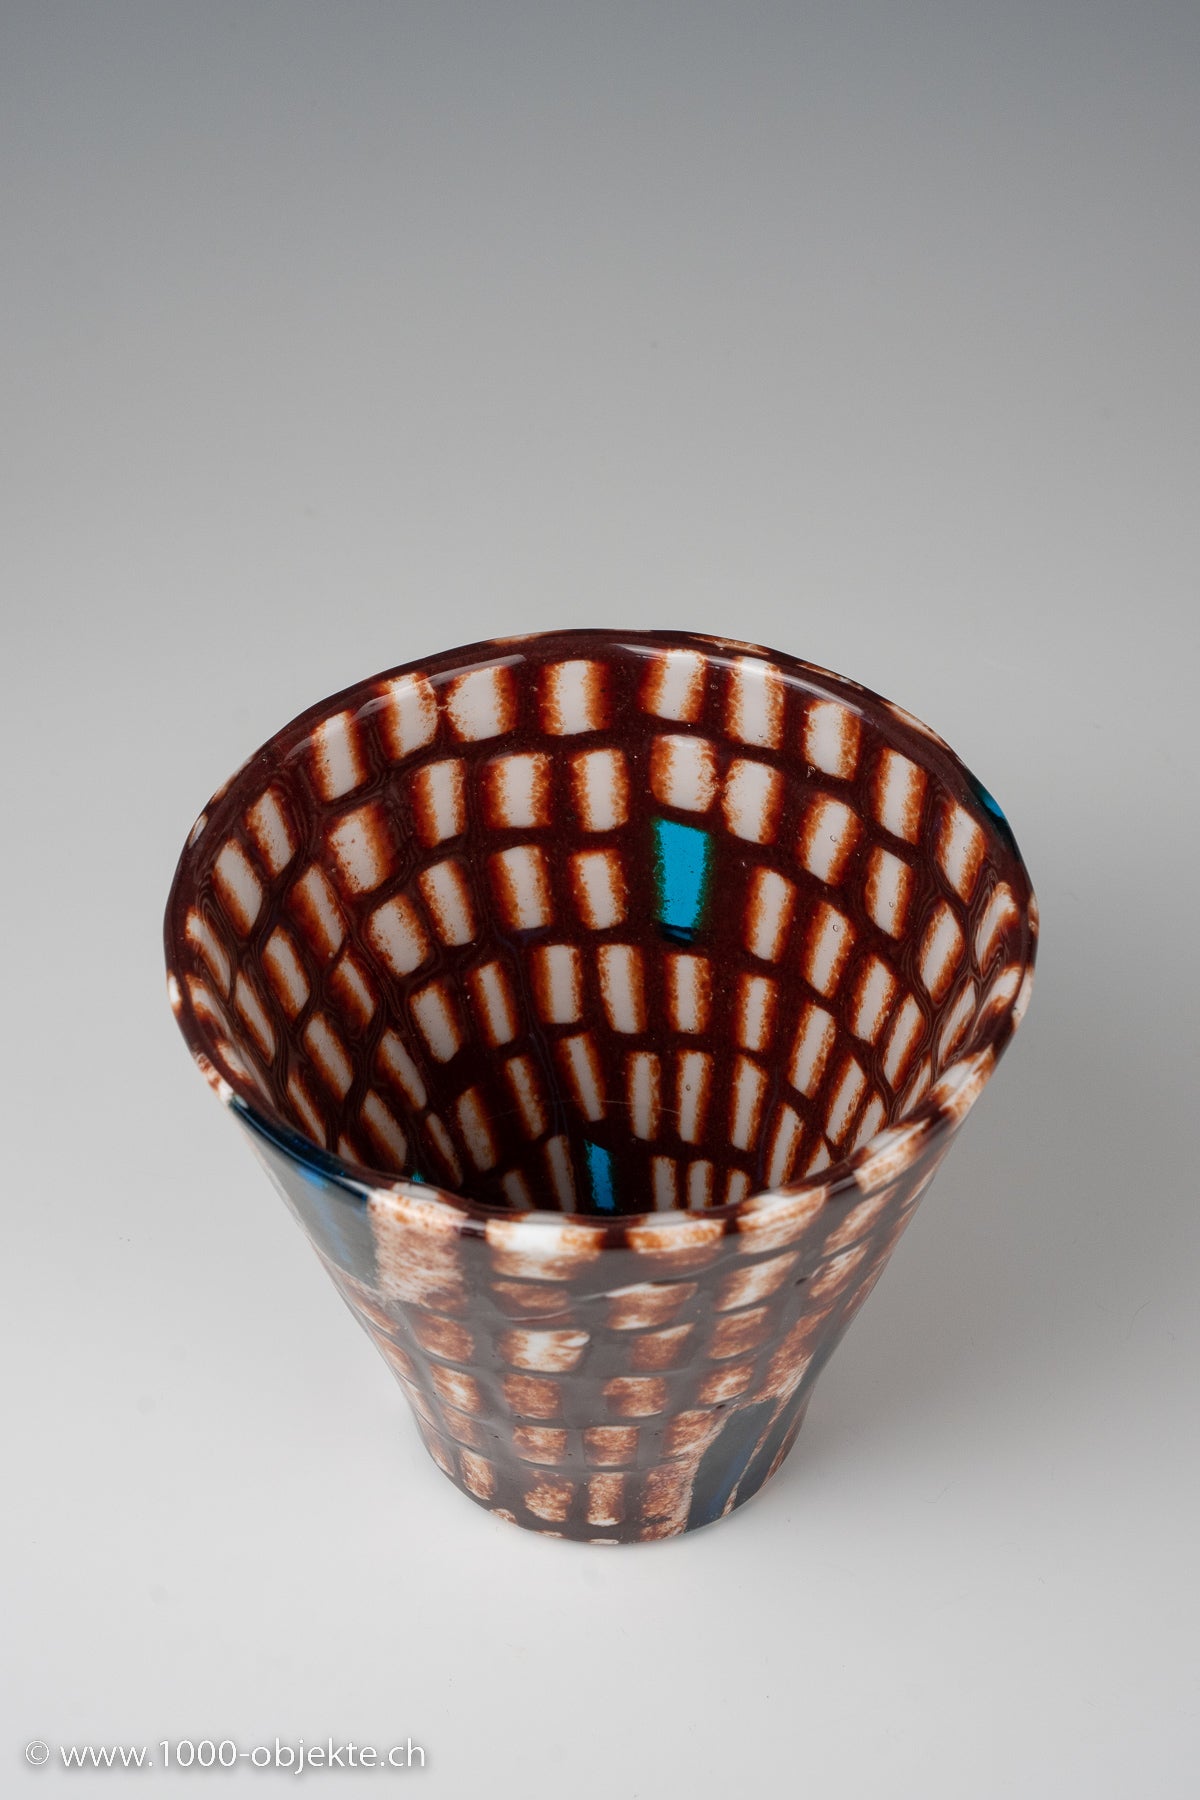 Yoichi Ohira, vase from 'Laguna' series, 1999